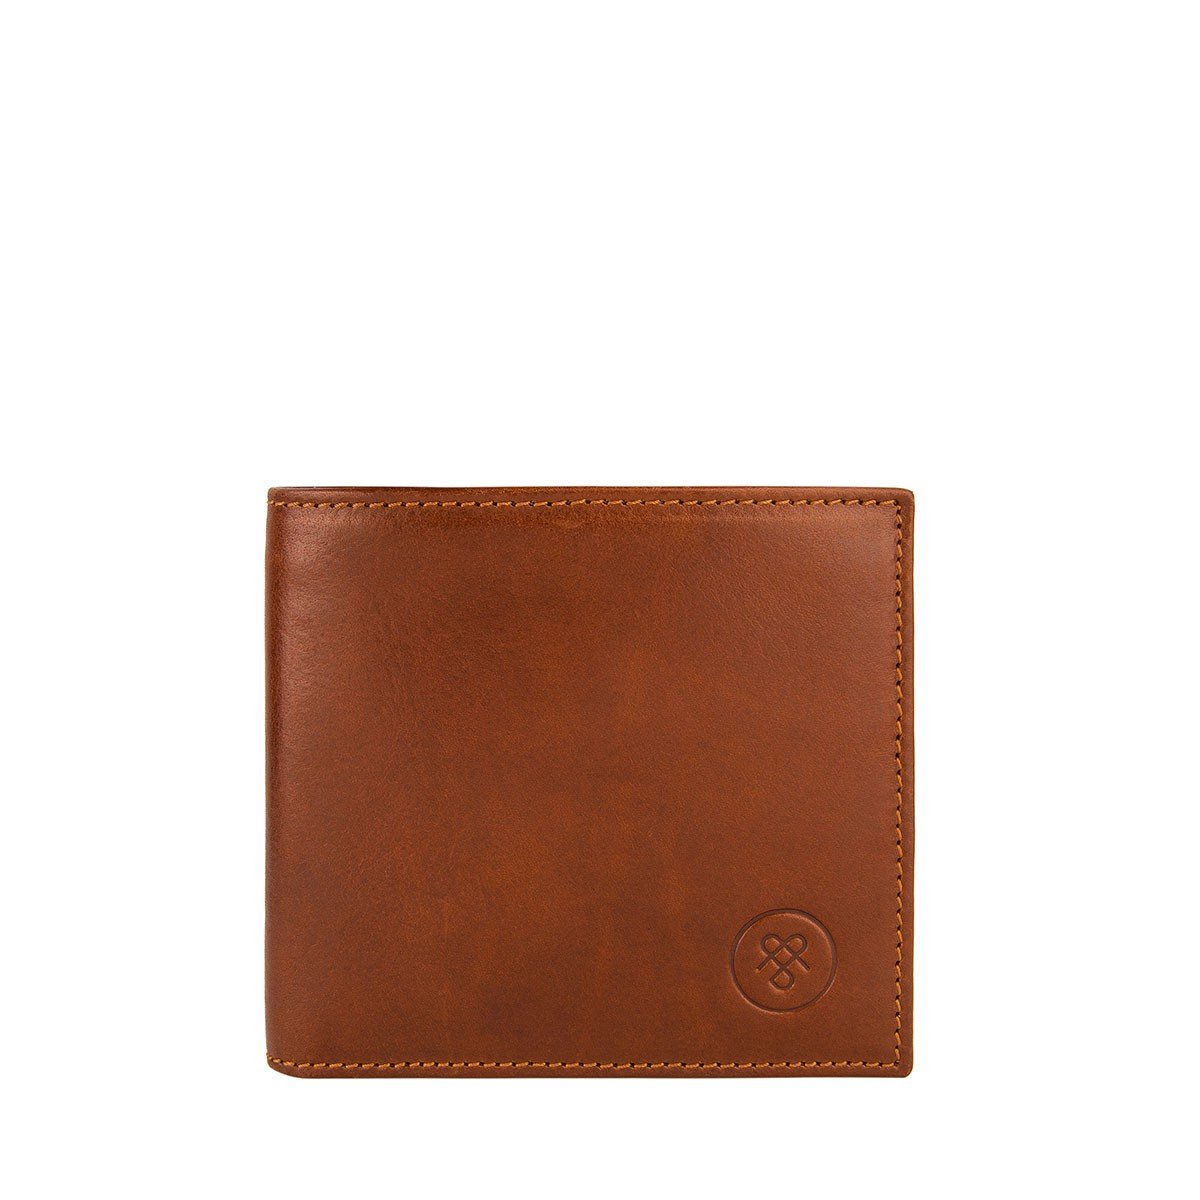 Claasico Men's Super Slim RFID Leather Wallet